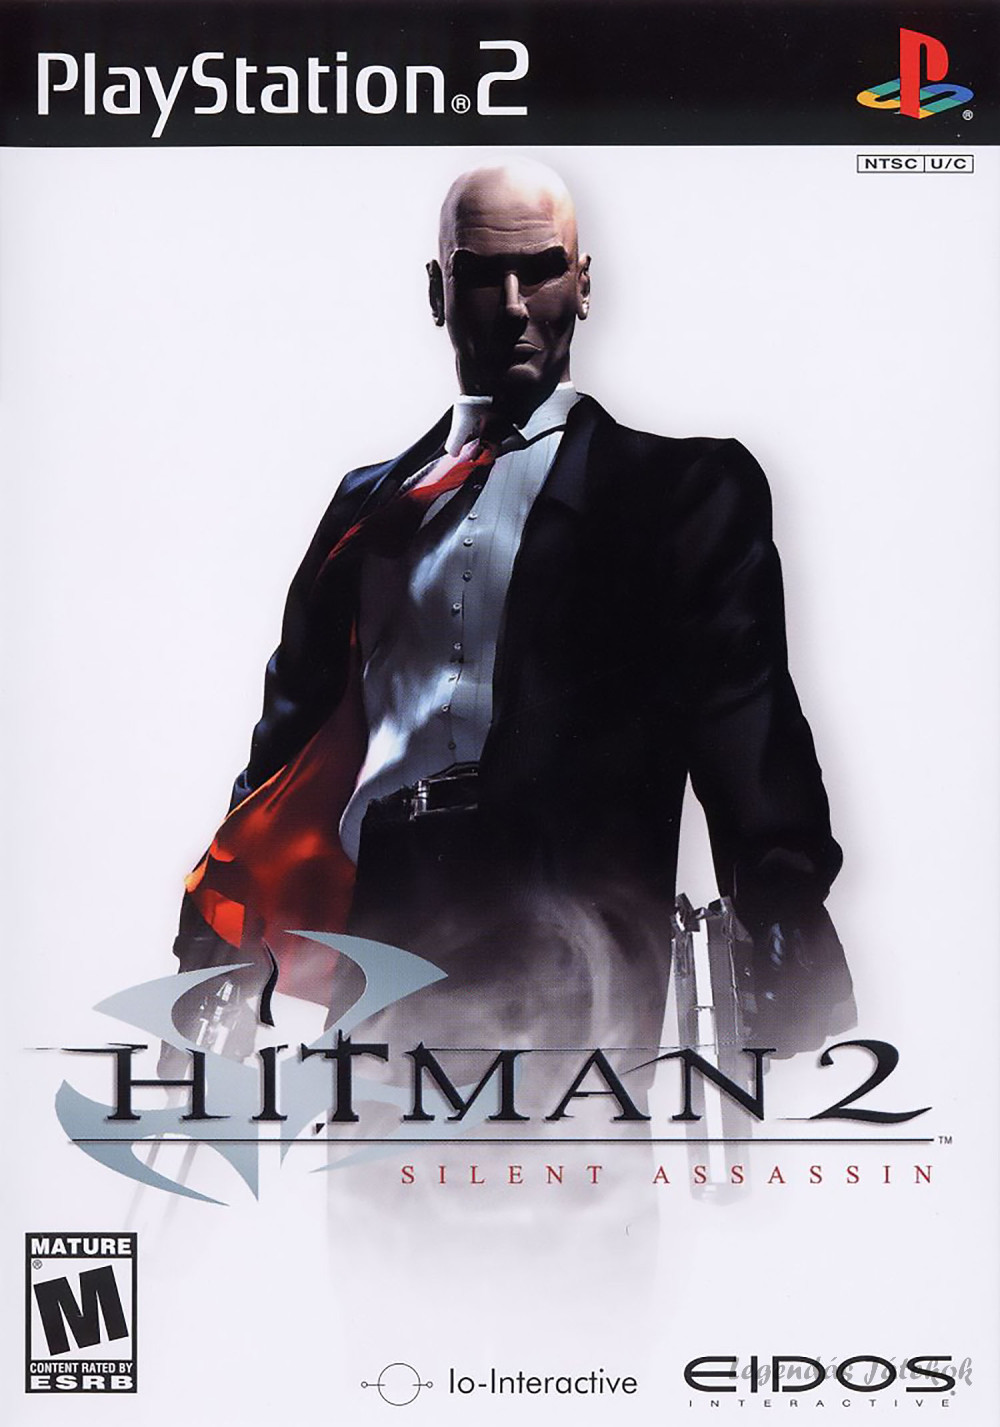 Hitman 2 - Silent Assassin Ps2 játék PAL (használt)